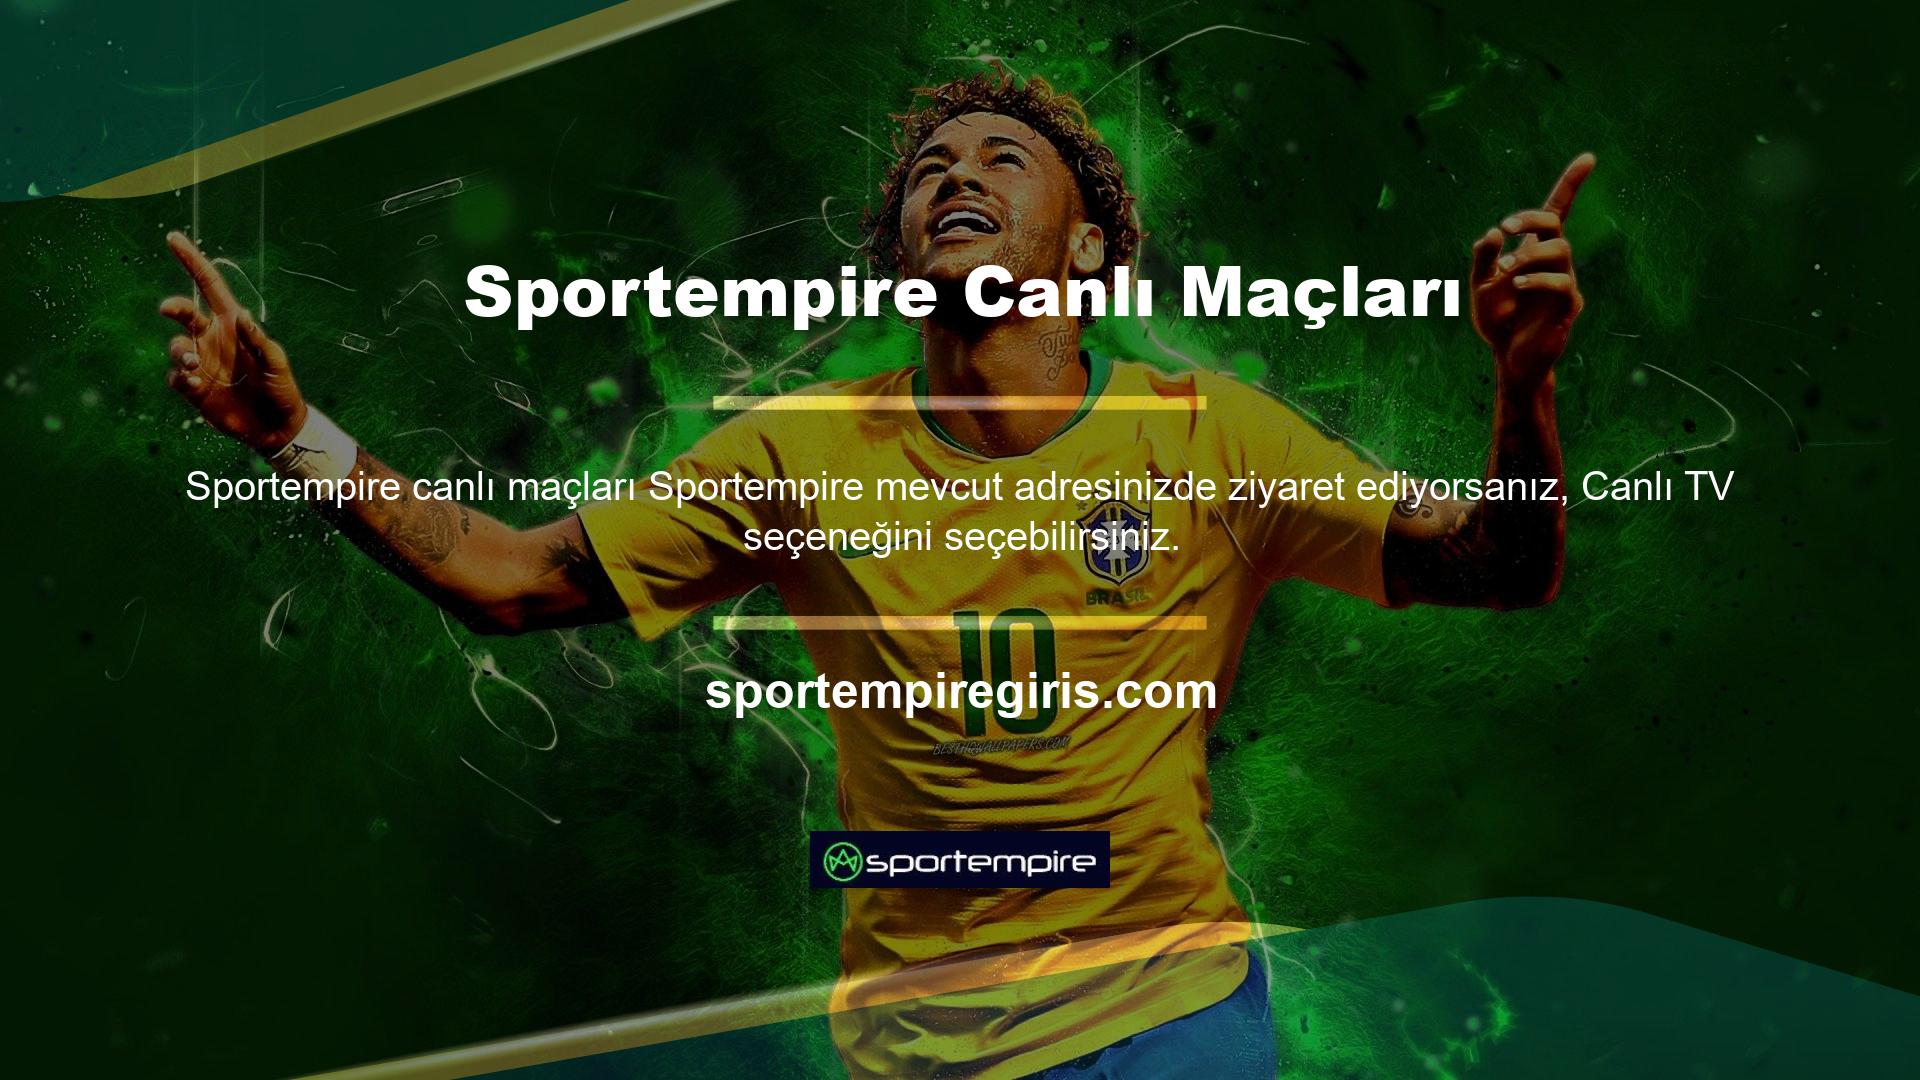 Örneğin futbol maçları Sportempire canlı maçları web bahislerde başı çekiyor